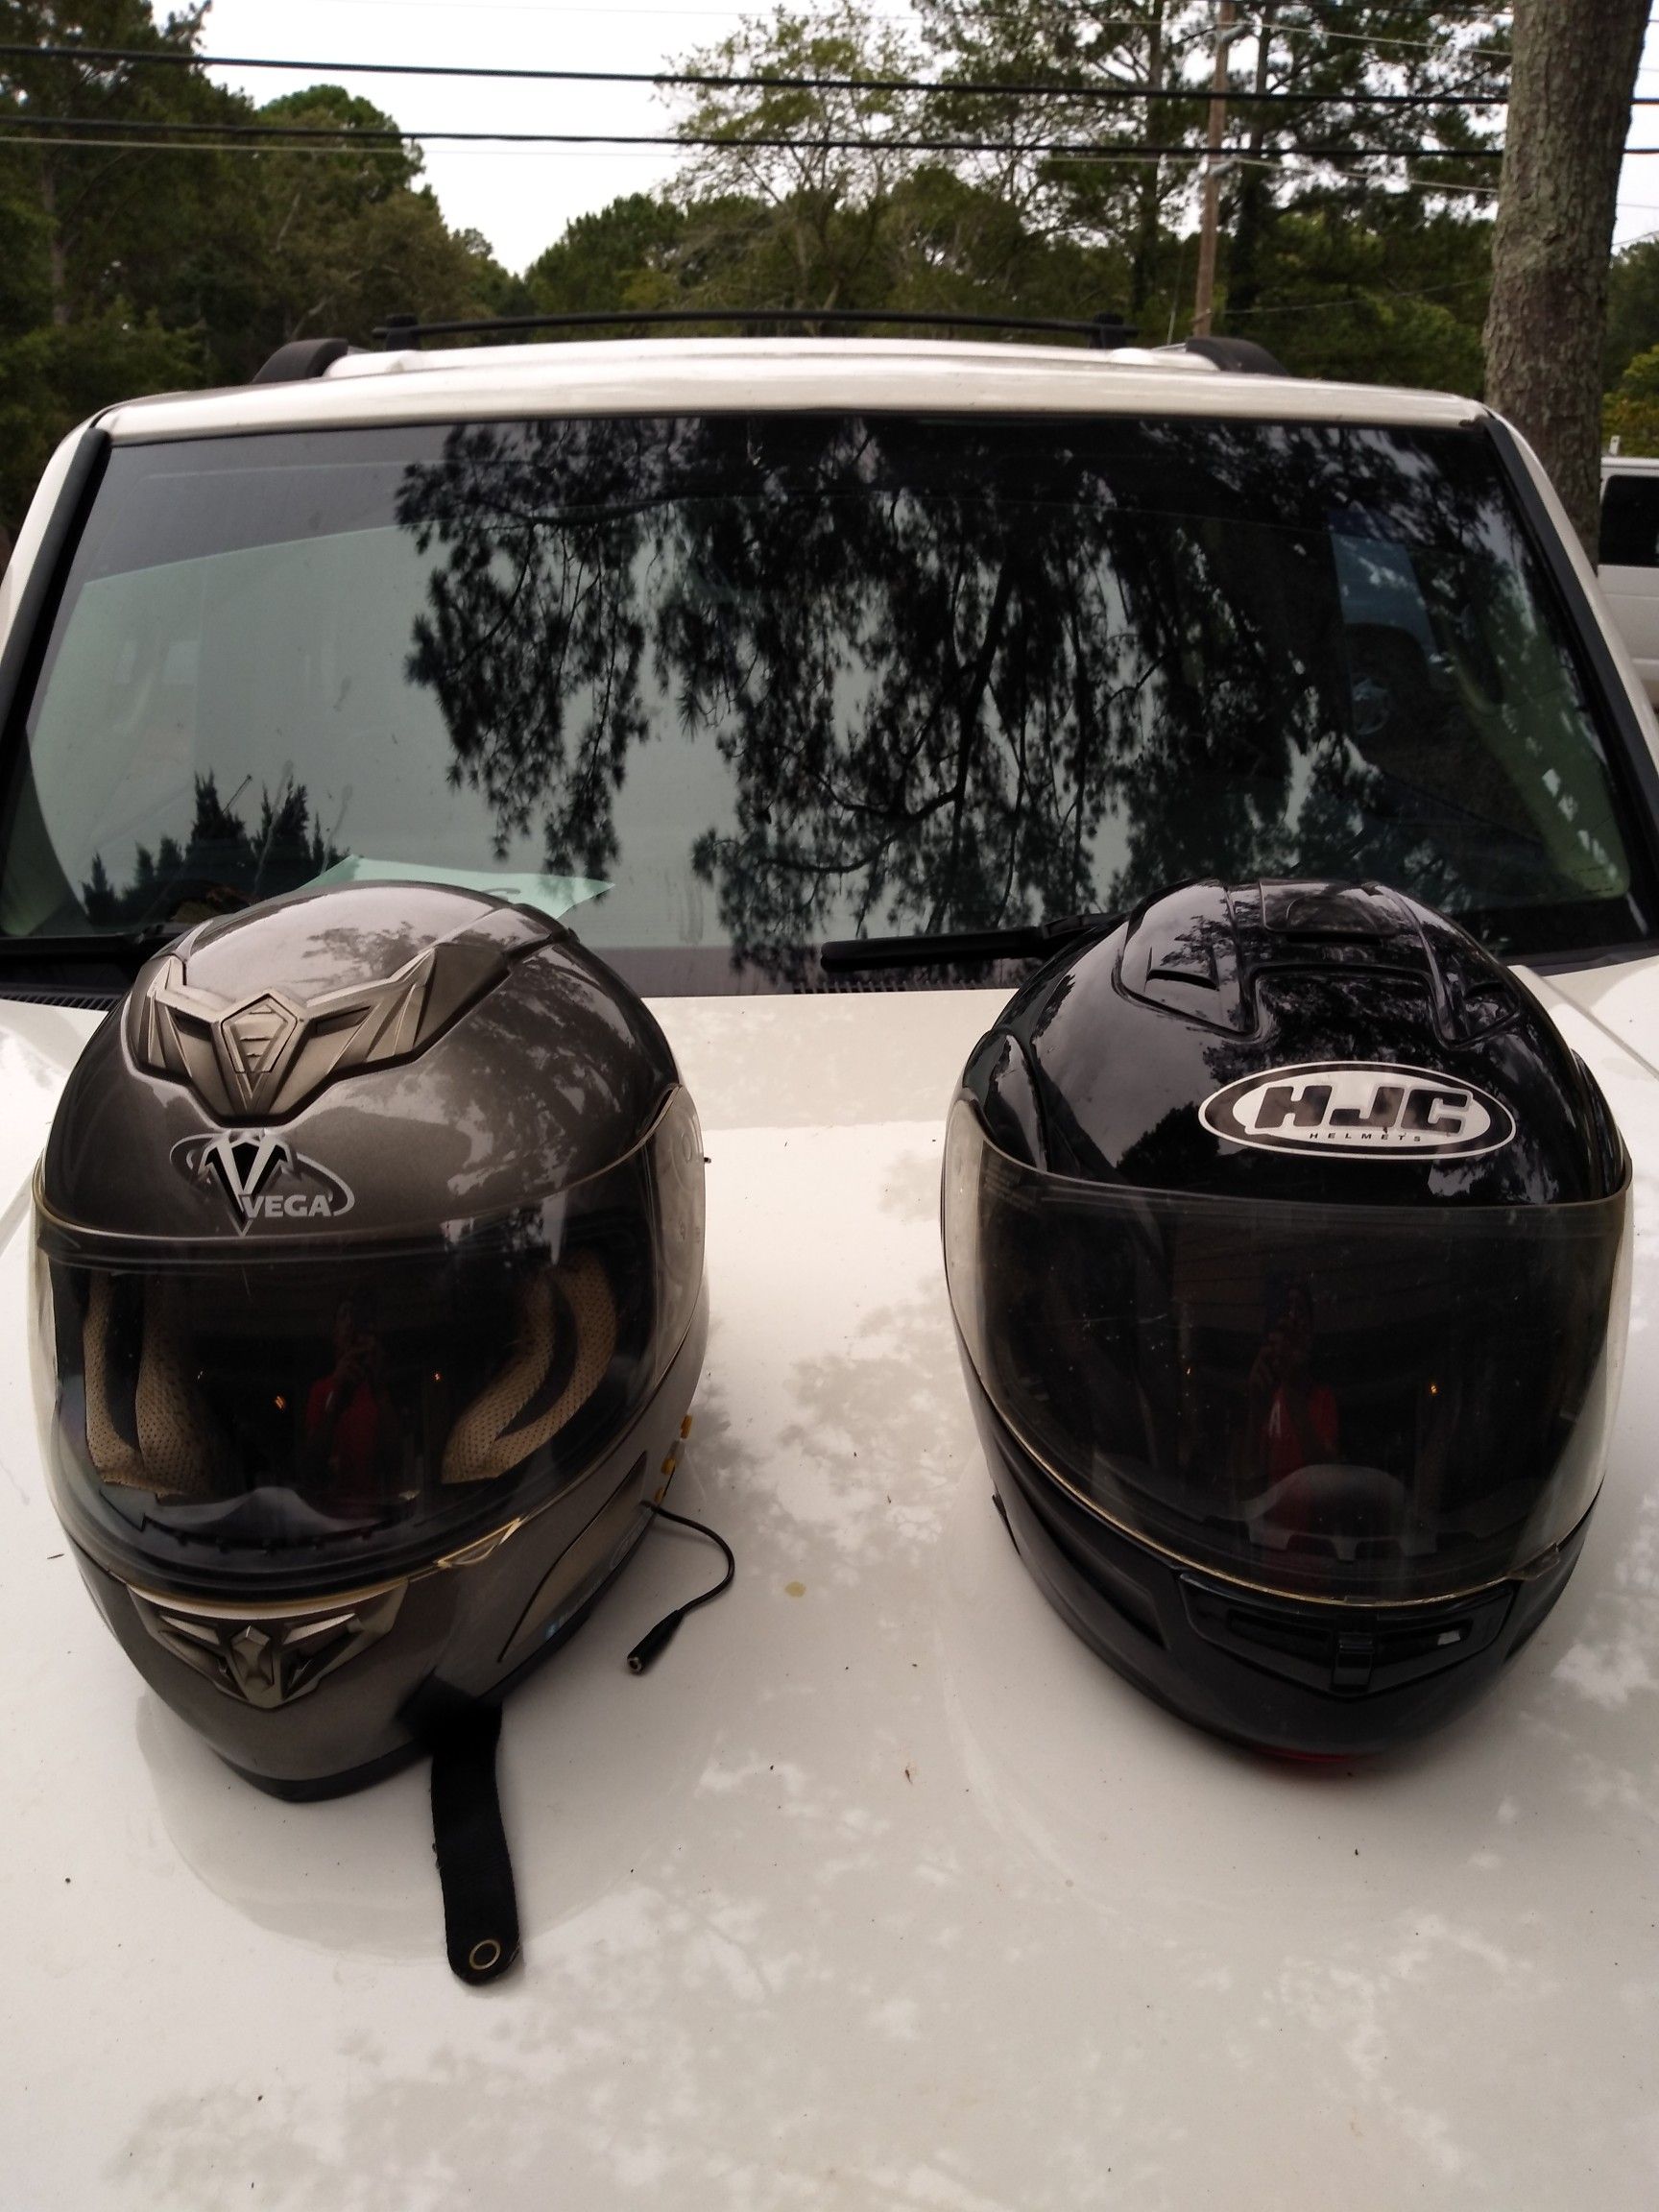 2 Motorcycle helmets